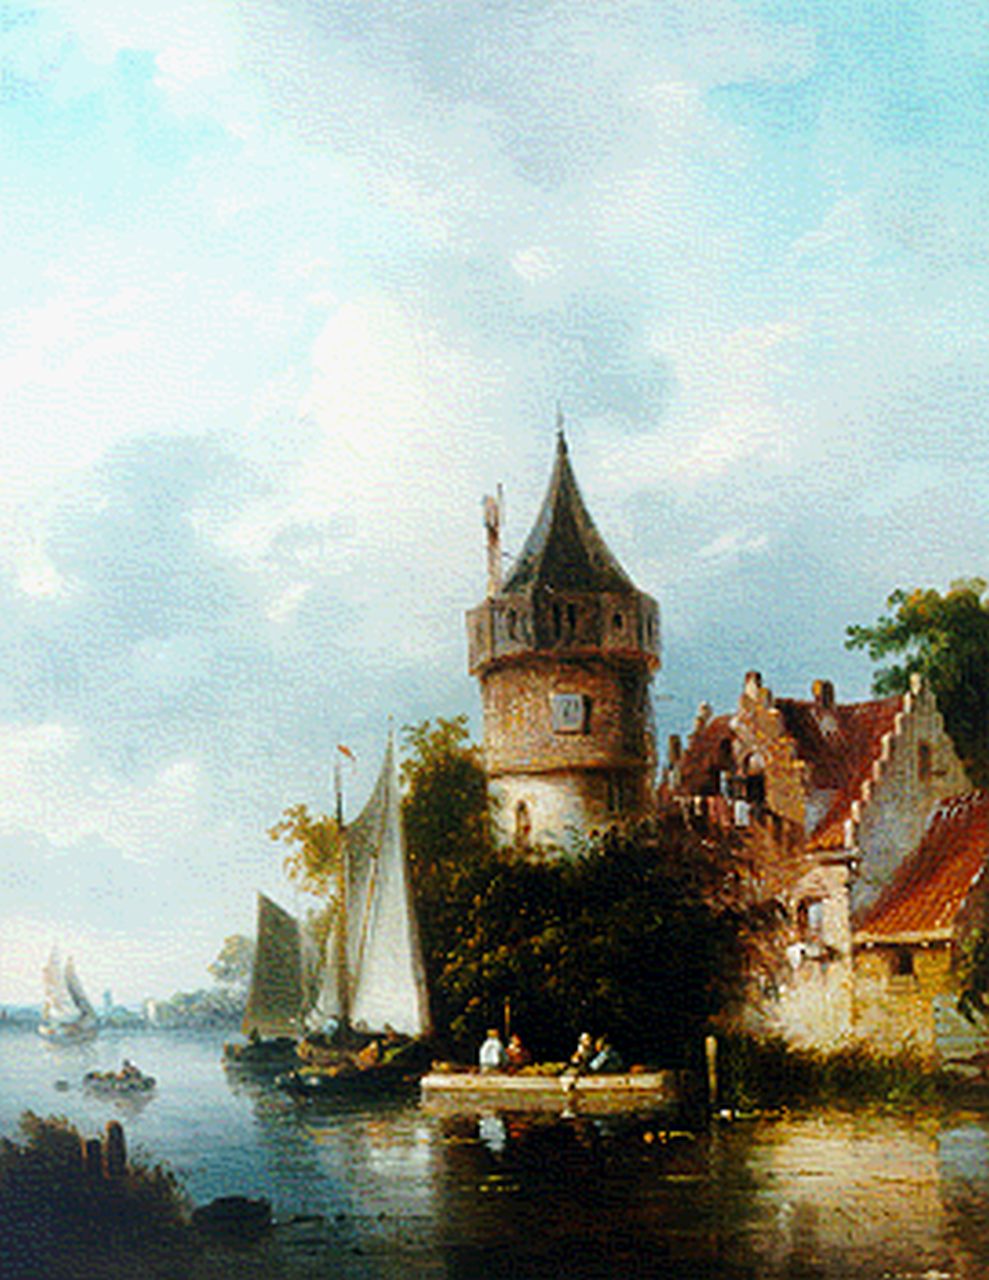 Stok J. van der | Jacobus van der Stok, Bedrijvigheid aan de dorpsrand, olieverf op paneel 27,0 x 21,3 cm, gesigneerd rechtsonder